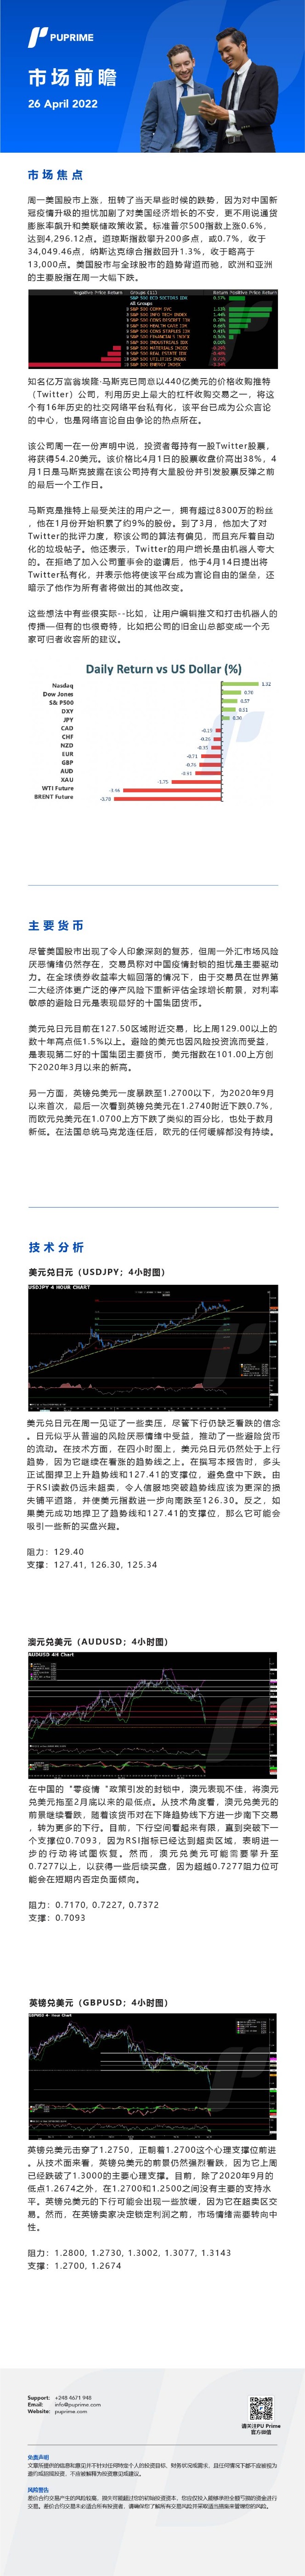 26042022 Daily Market Analysis__CHN.jpg